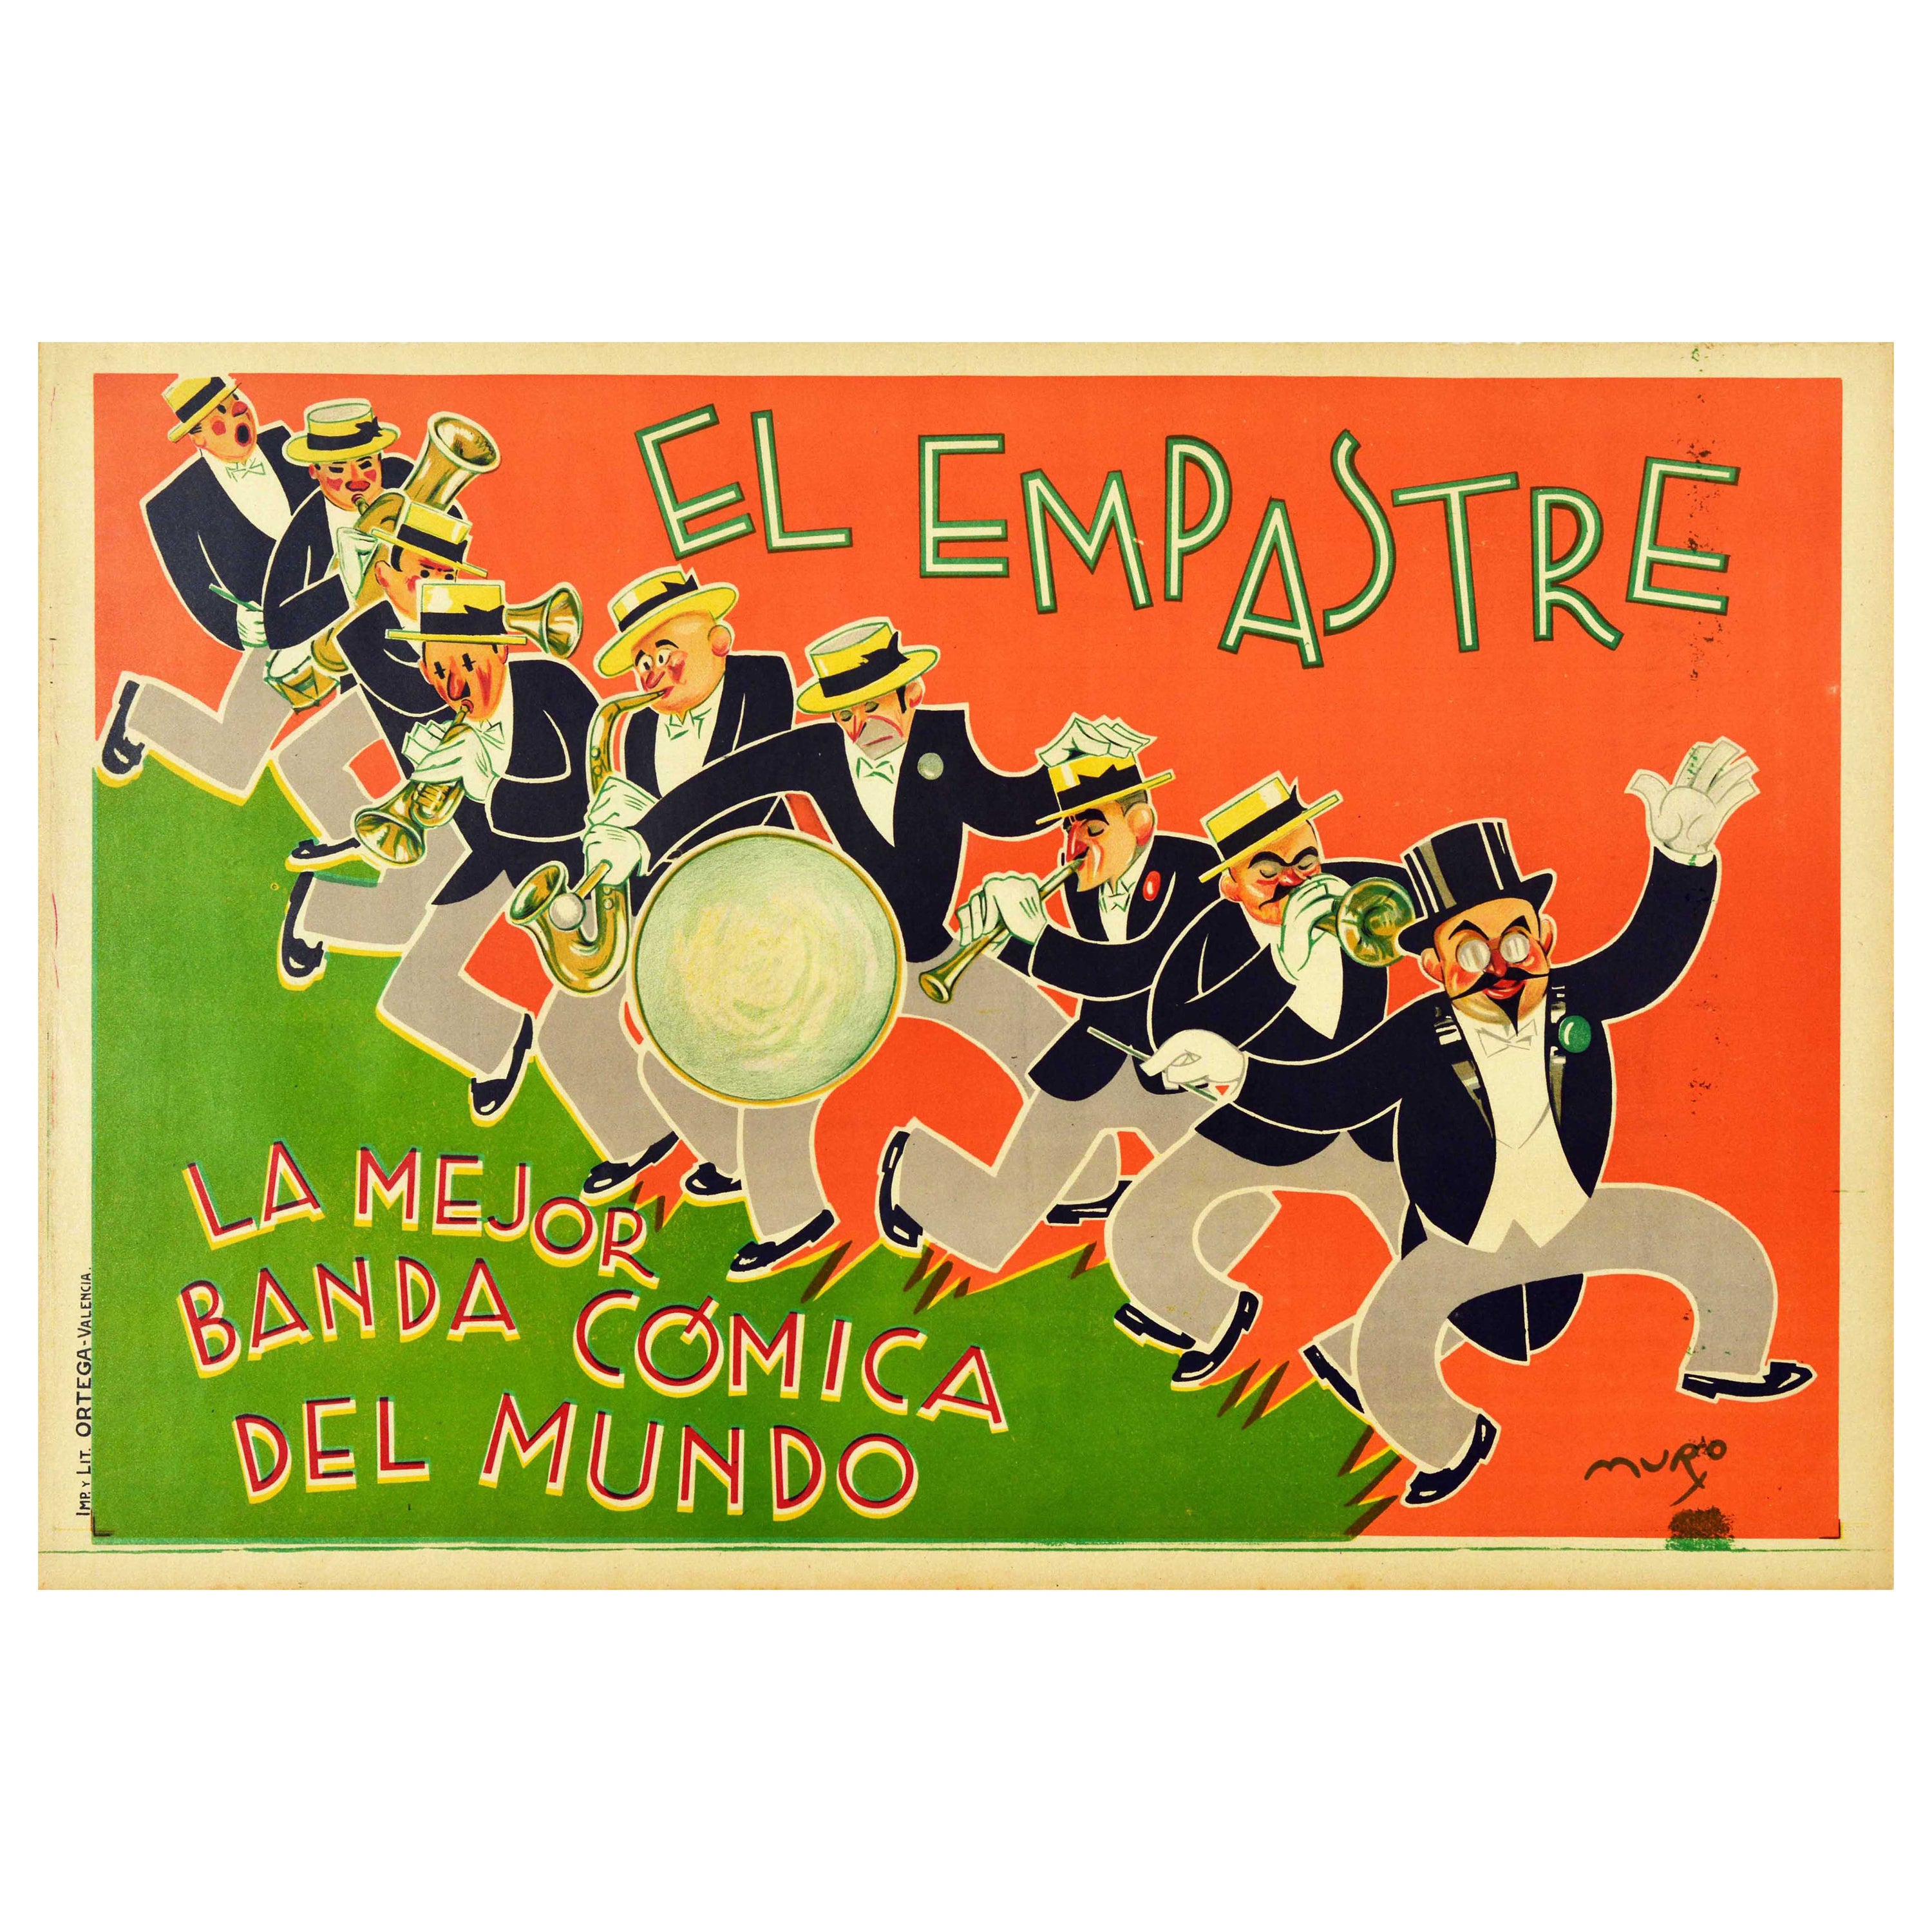 Original Vintage Music Poster El Empastre Jazz Band Drum Saxophone Trumpet Band For Sale